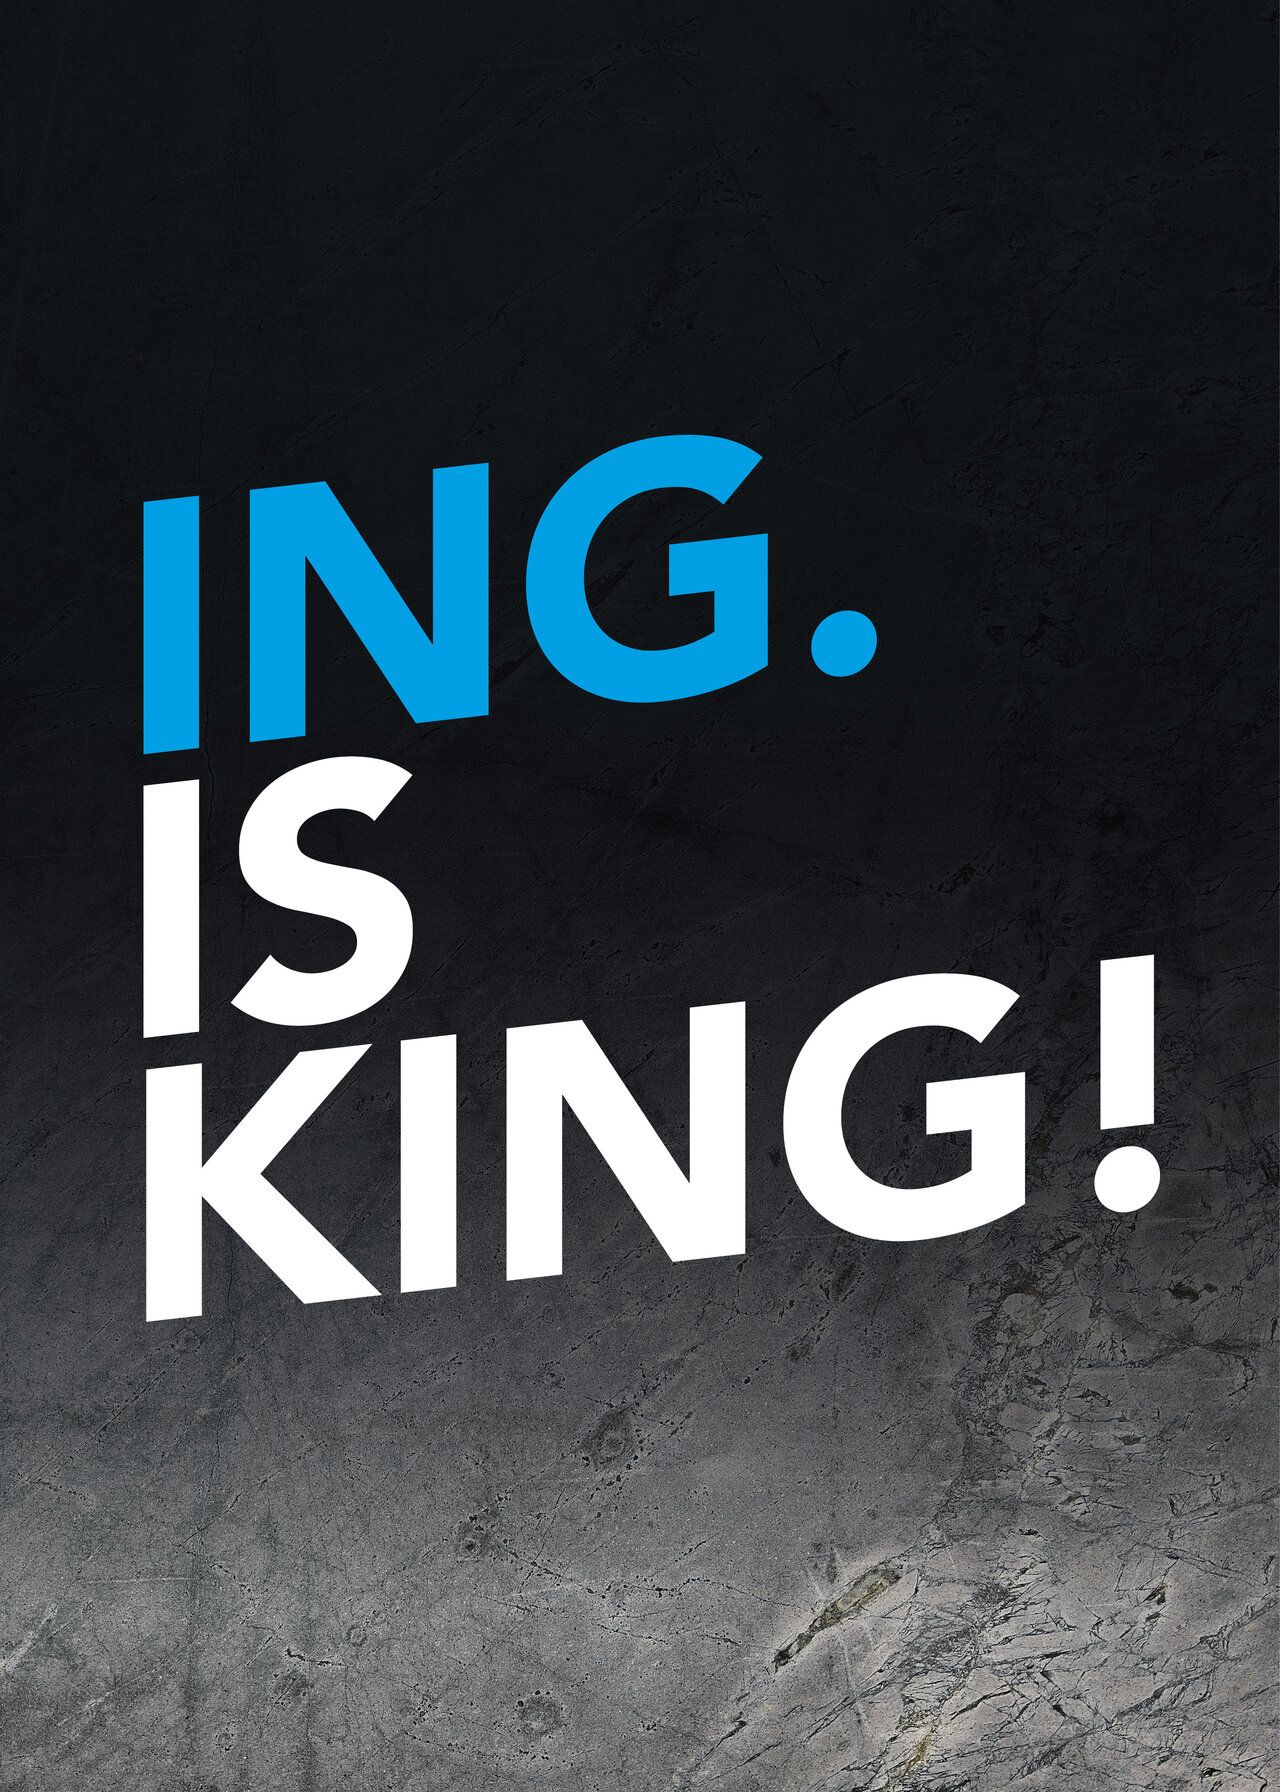 Der Text "Ing. is King!" in weiß-blau.